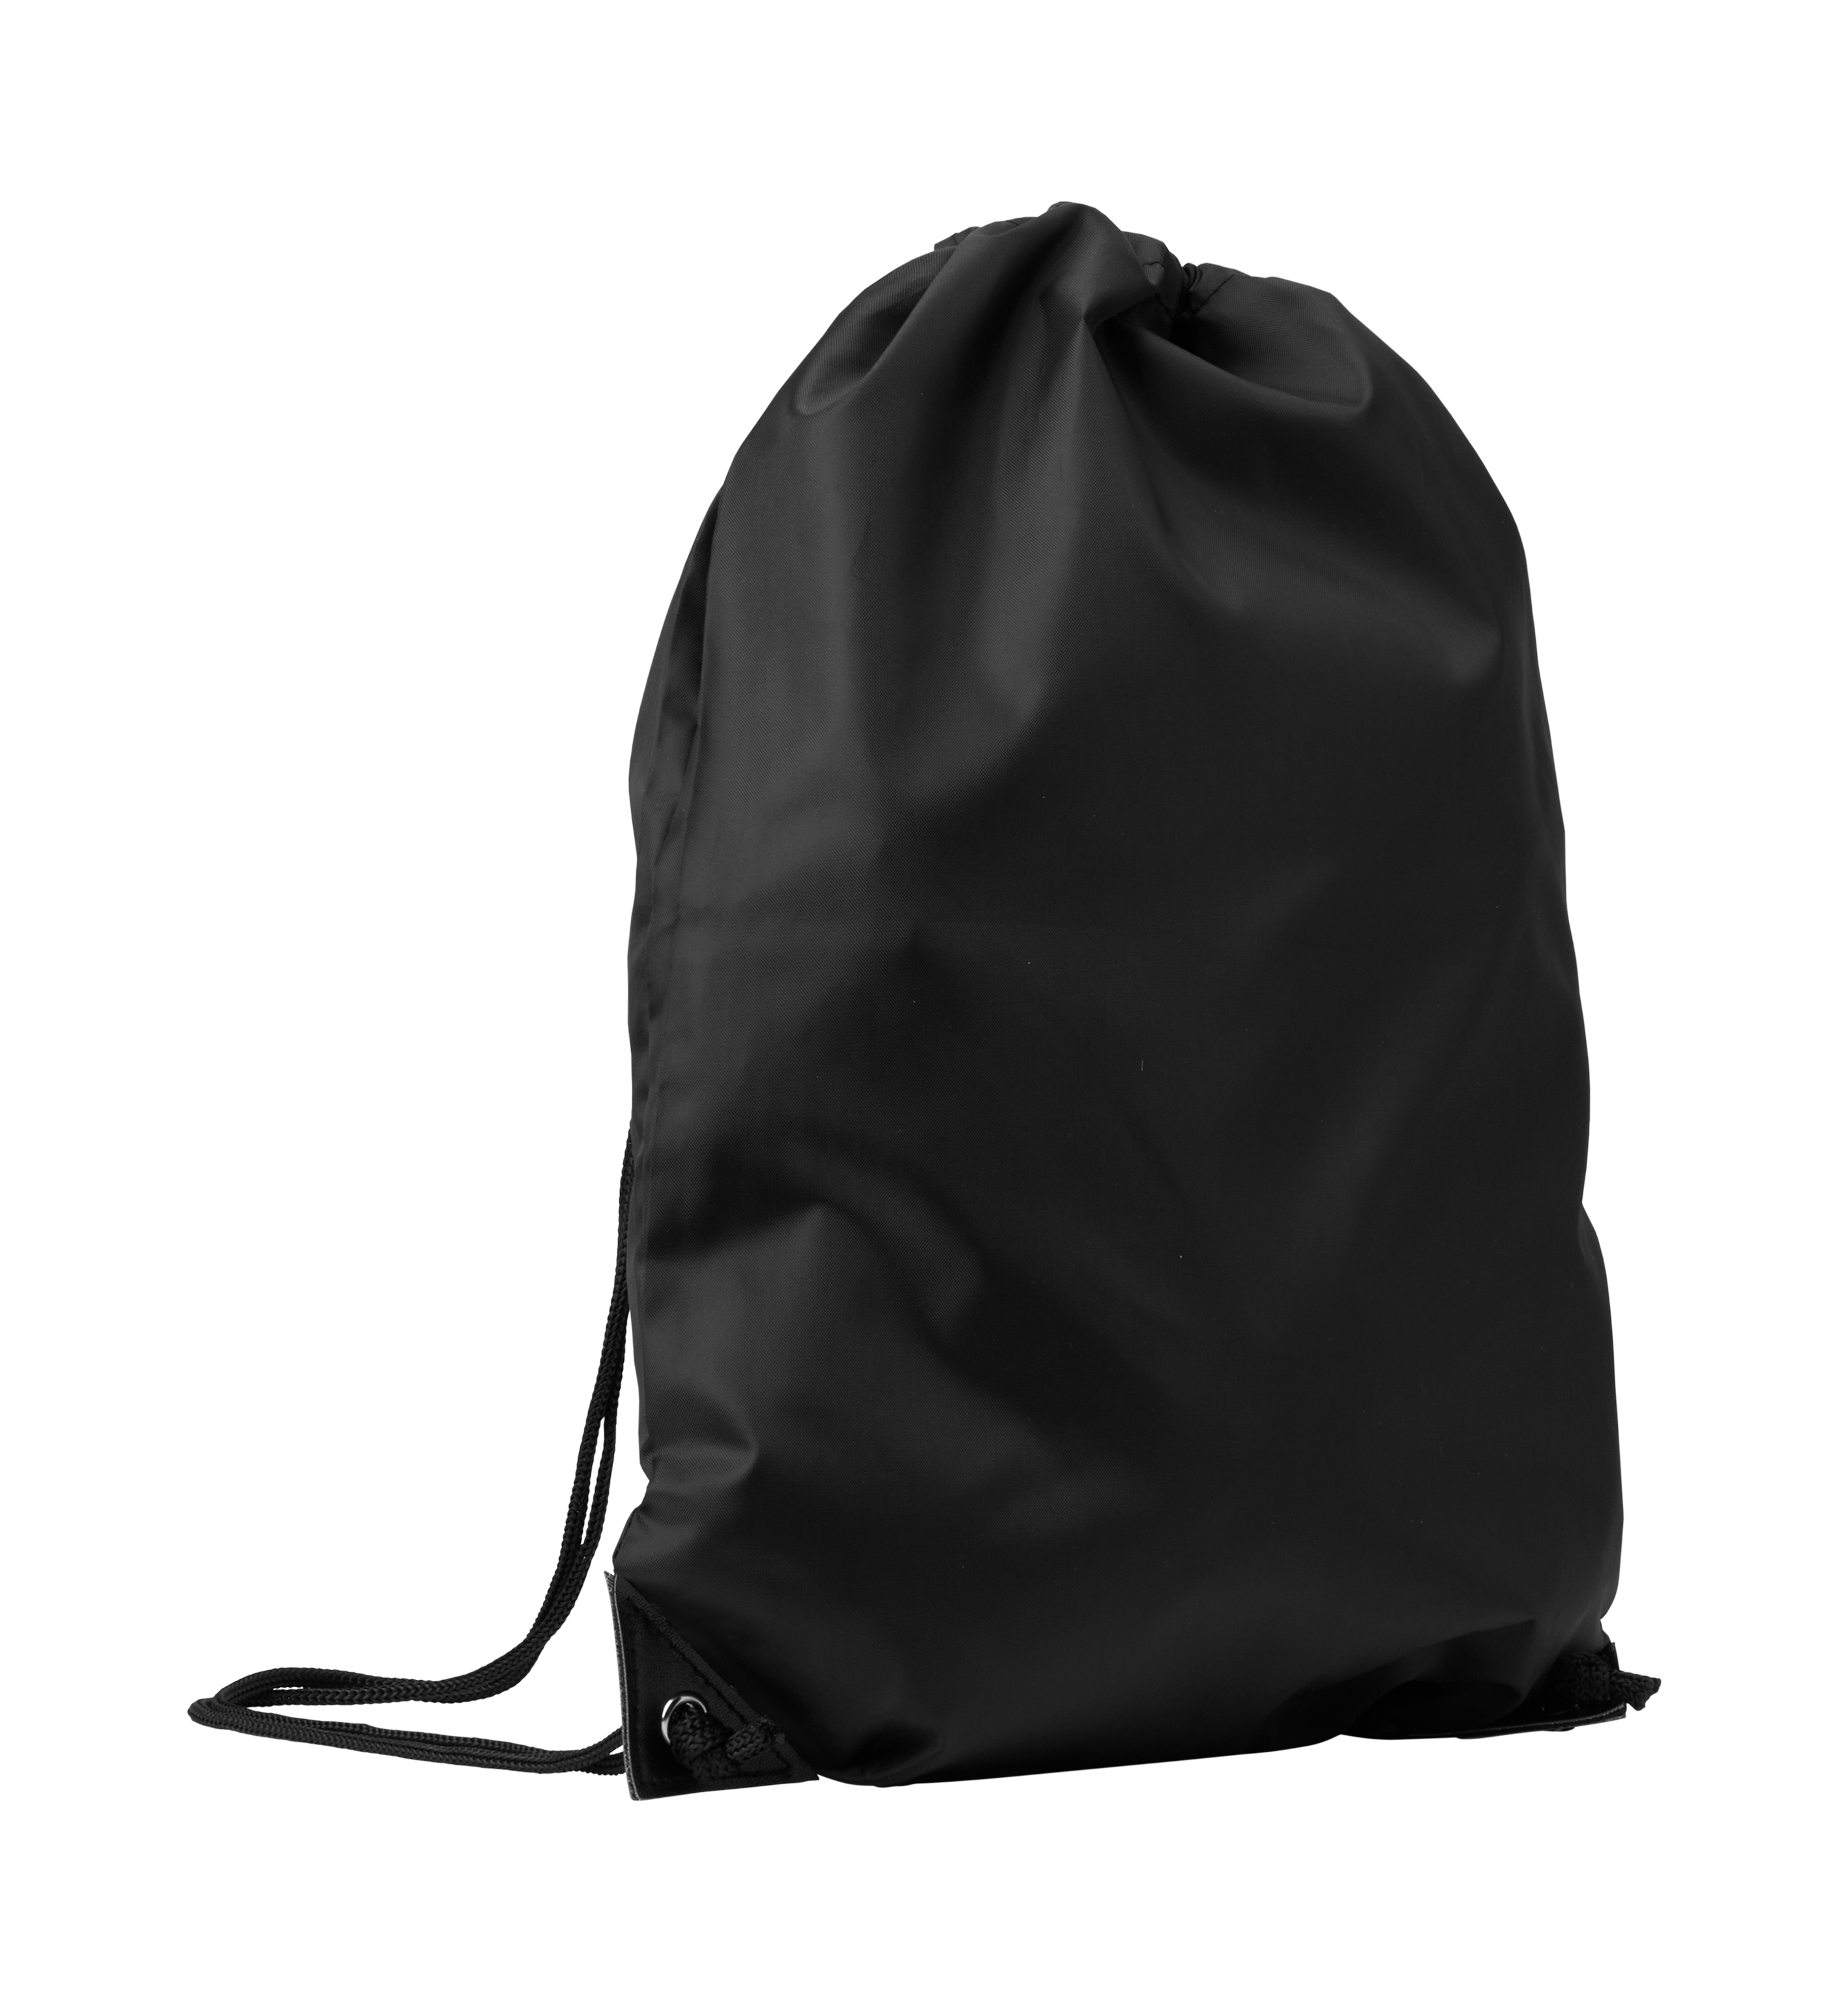 Gym bag | backpack